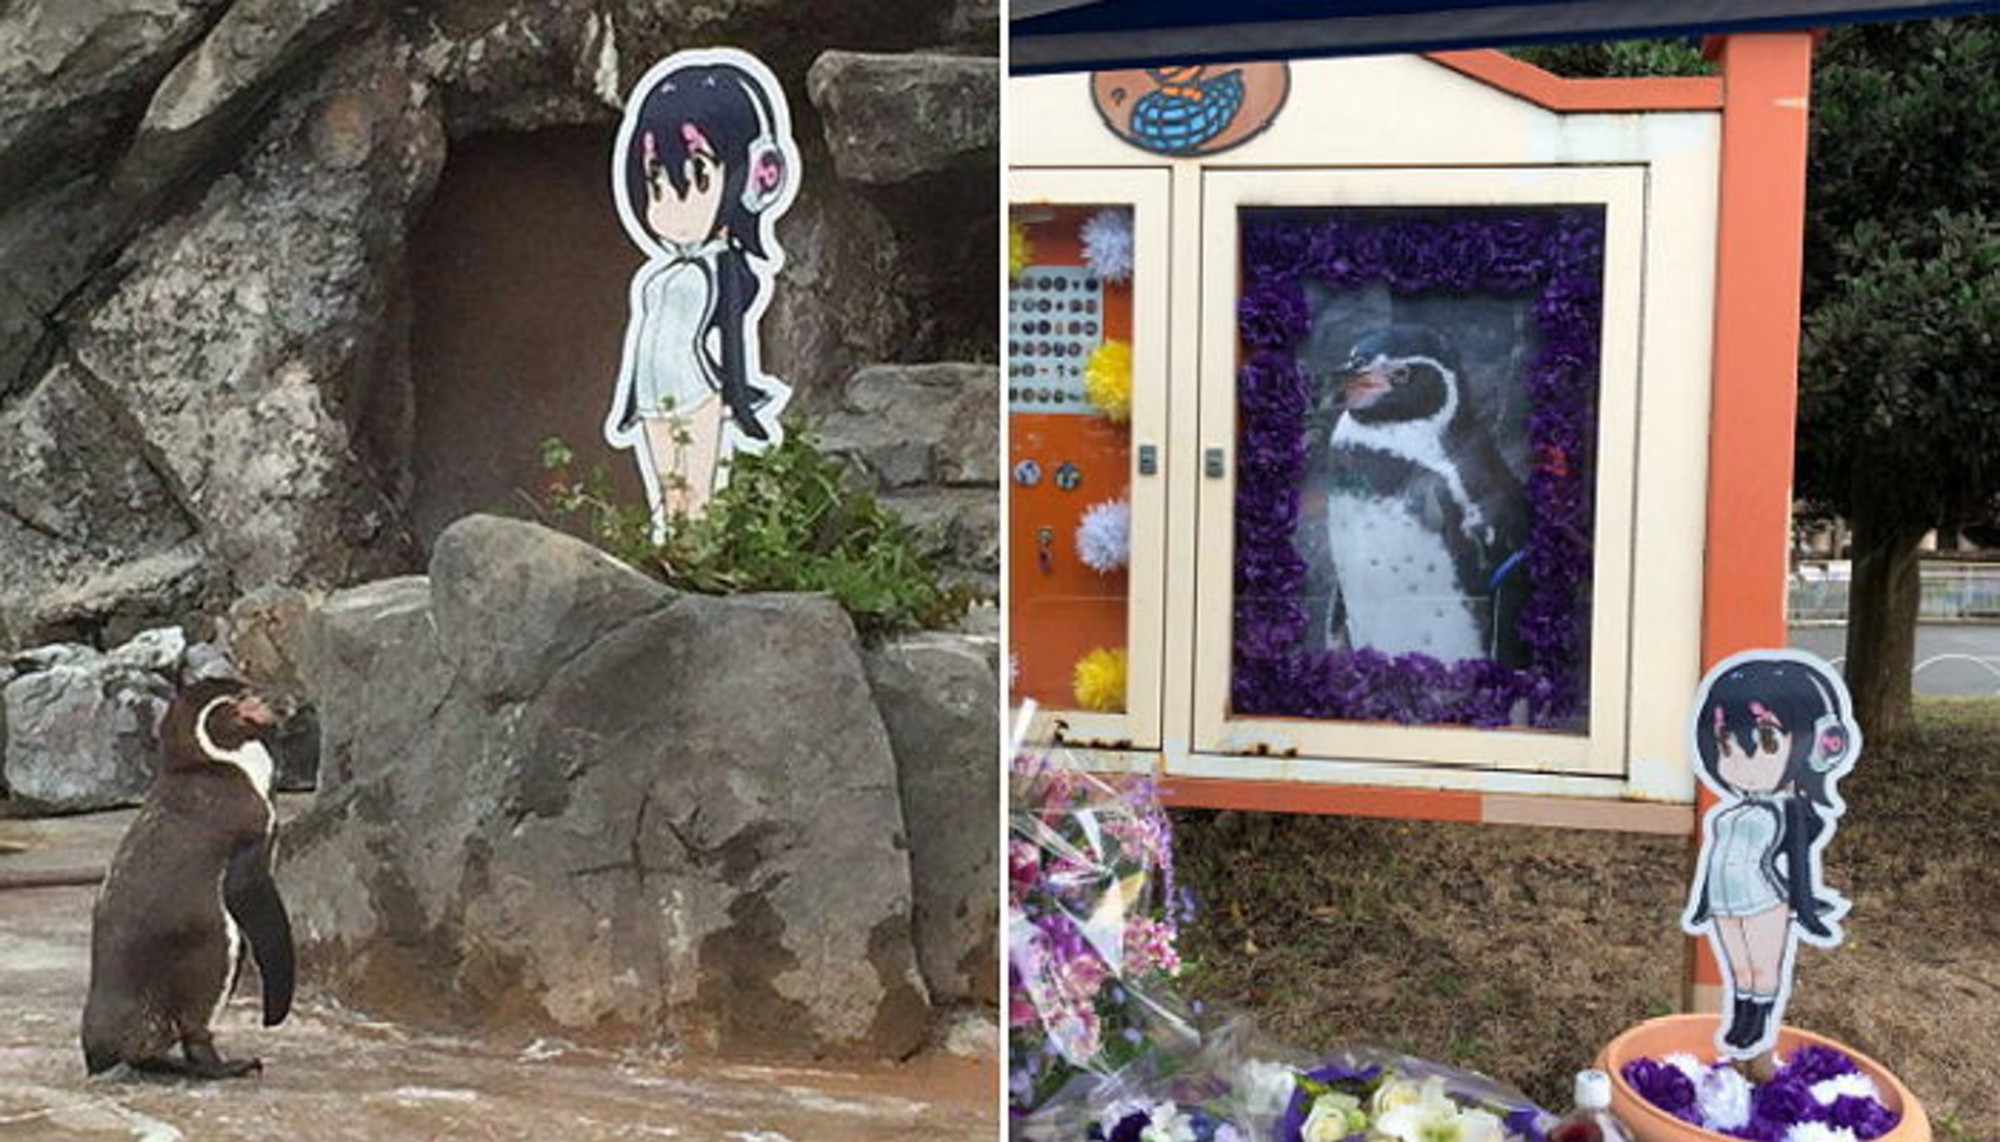 Penguin Kesepian Yang Kemudian Jatuh Cinta Kepada Gambar Kartun Ini Dikabarkan Meninggal